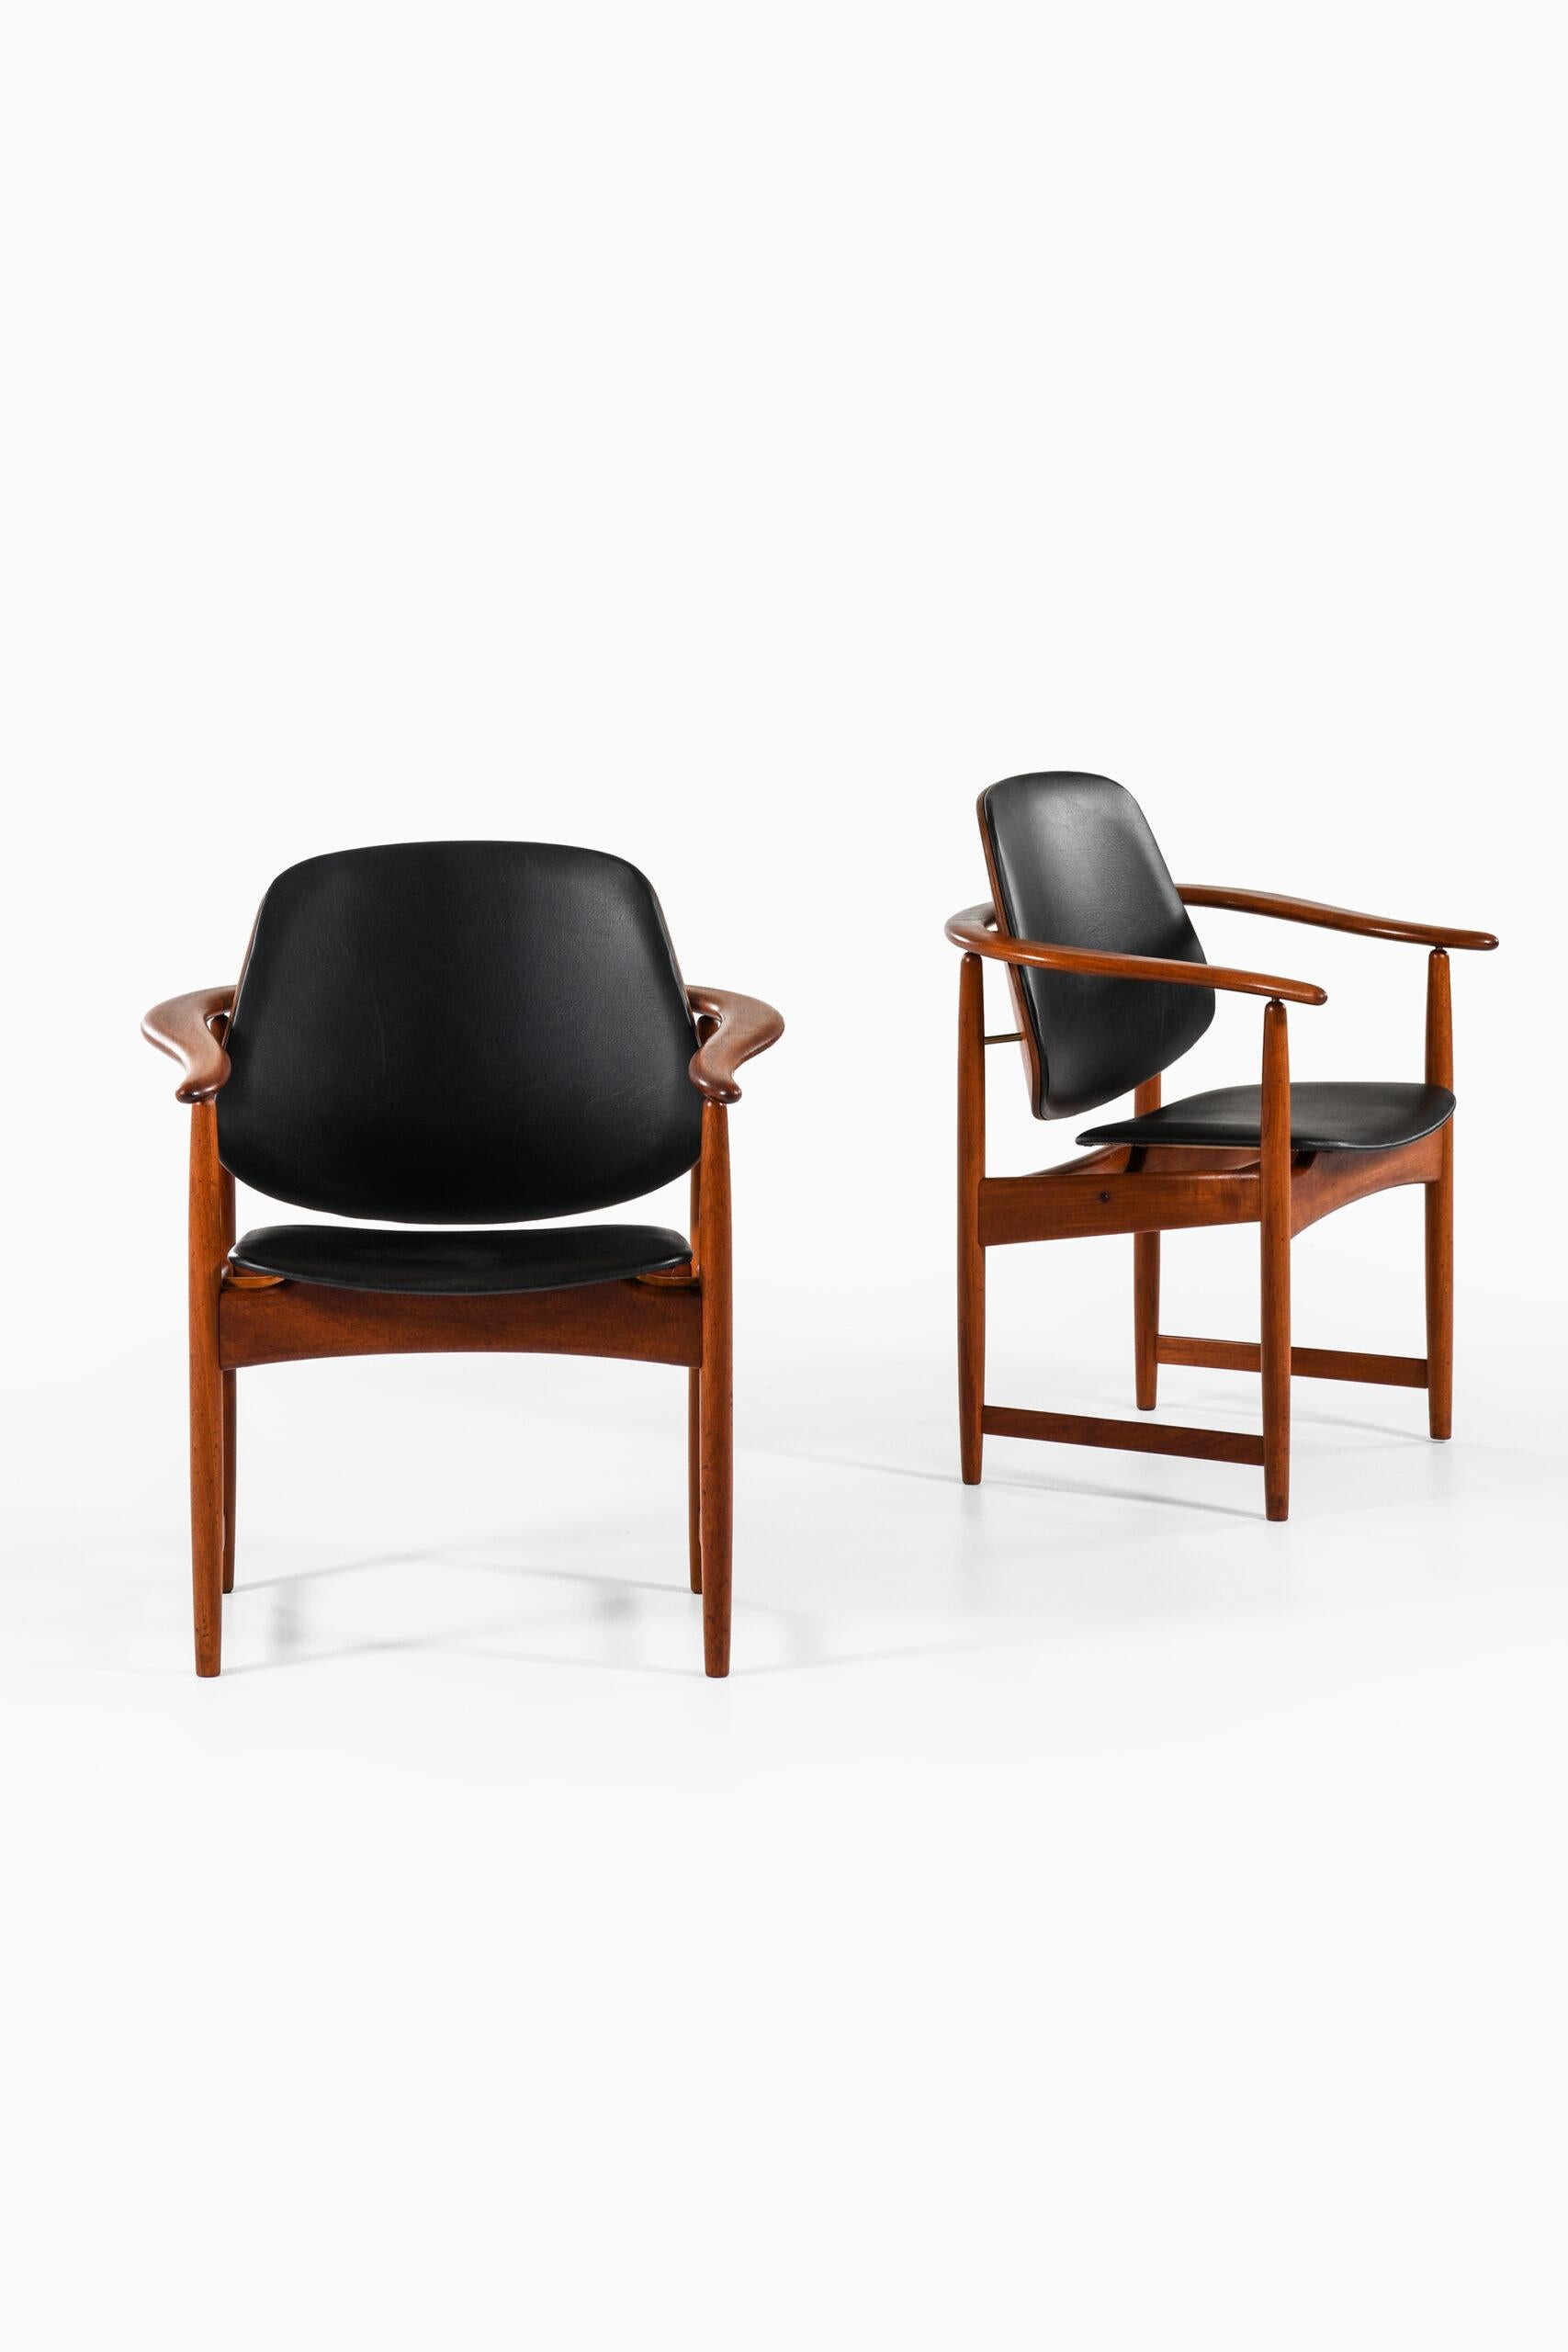 Rare paire de fauteuils conçus par Arne Hovmand/One. Produit par Onsild Møbelfabrik pour Jutex, Århus au Danemark.